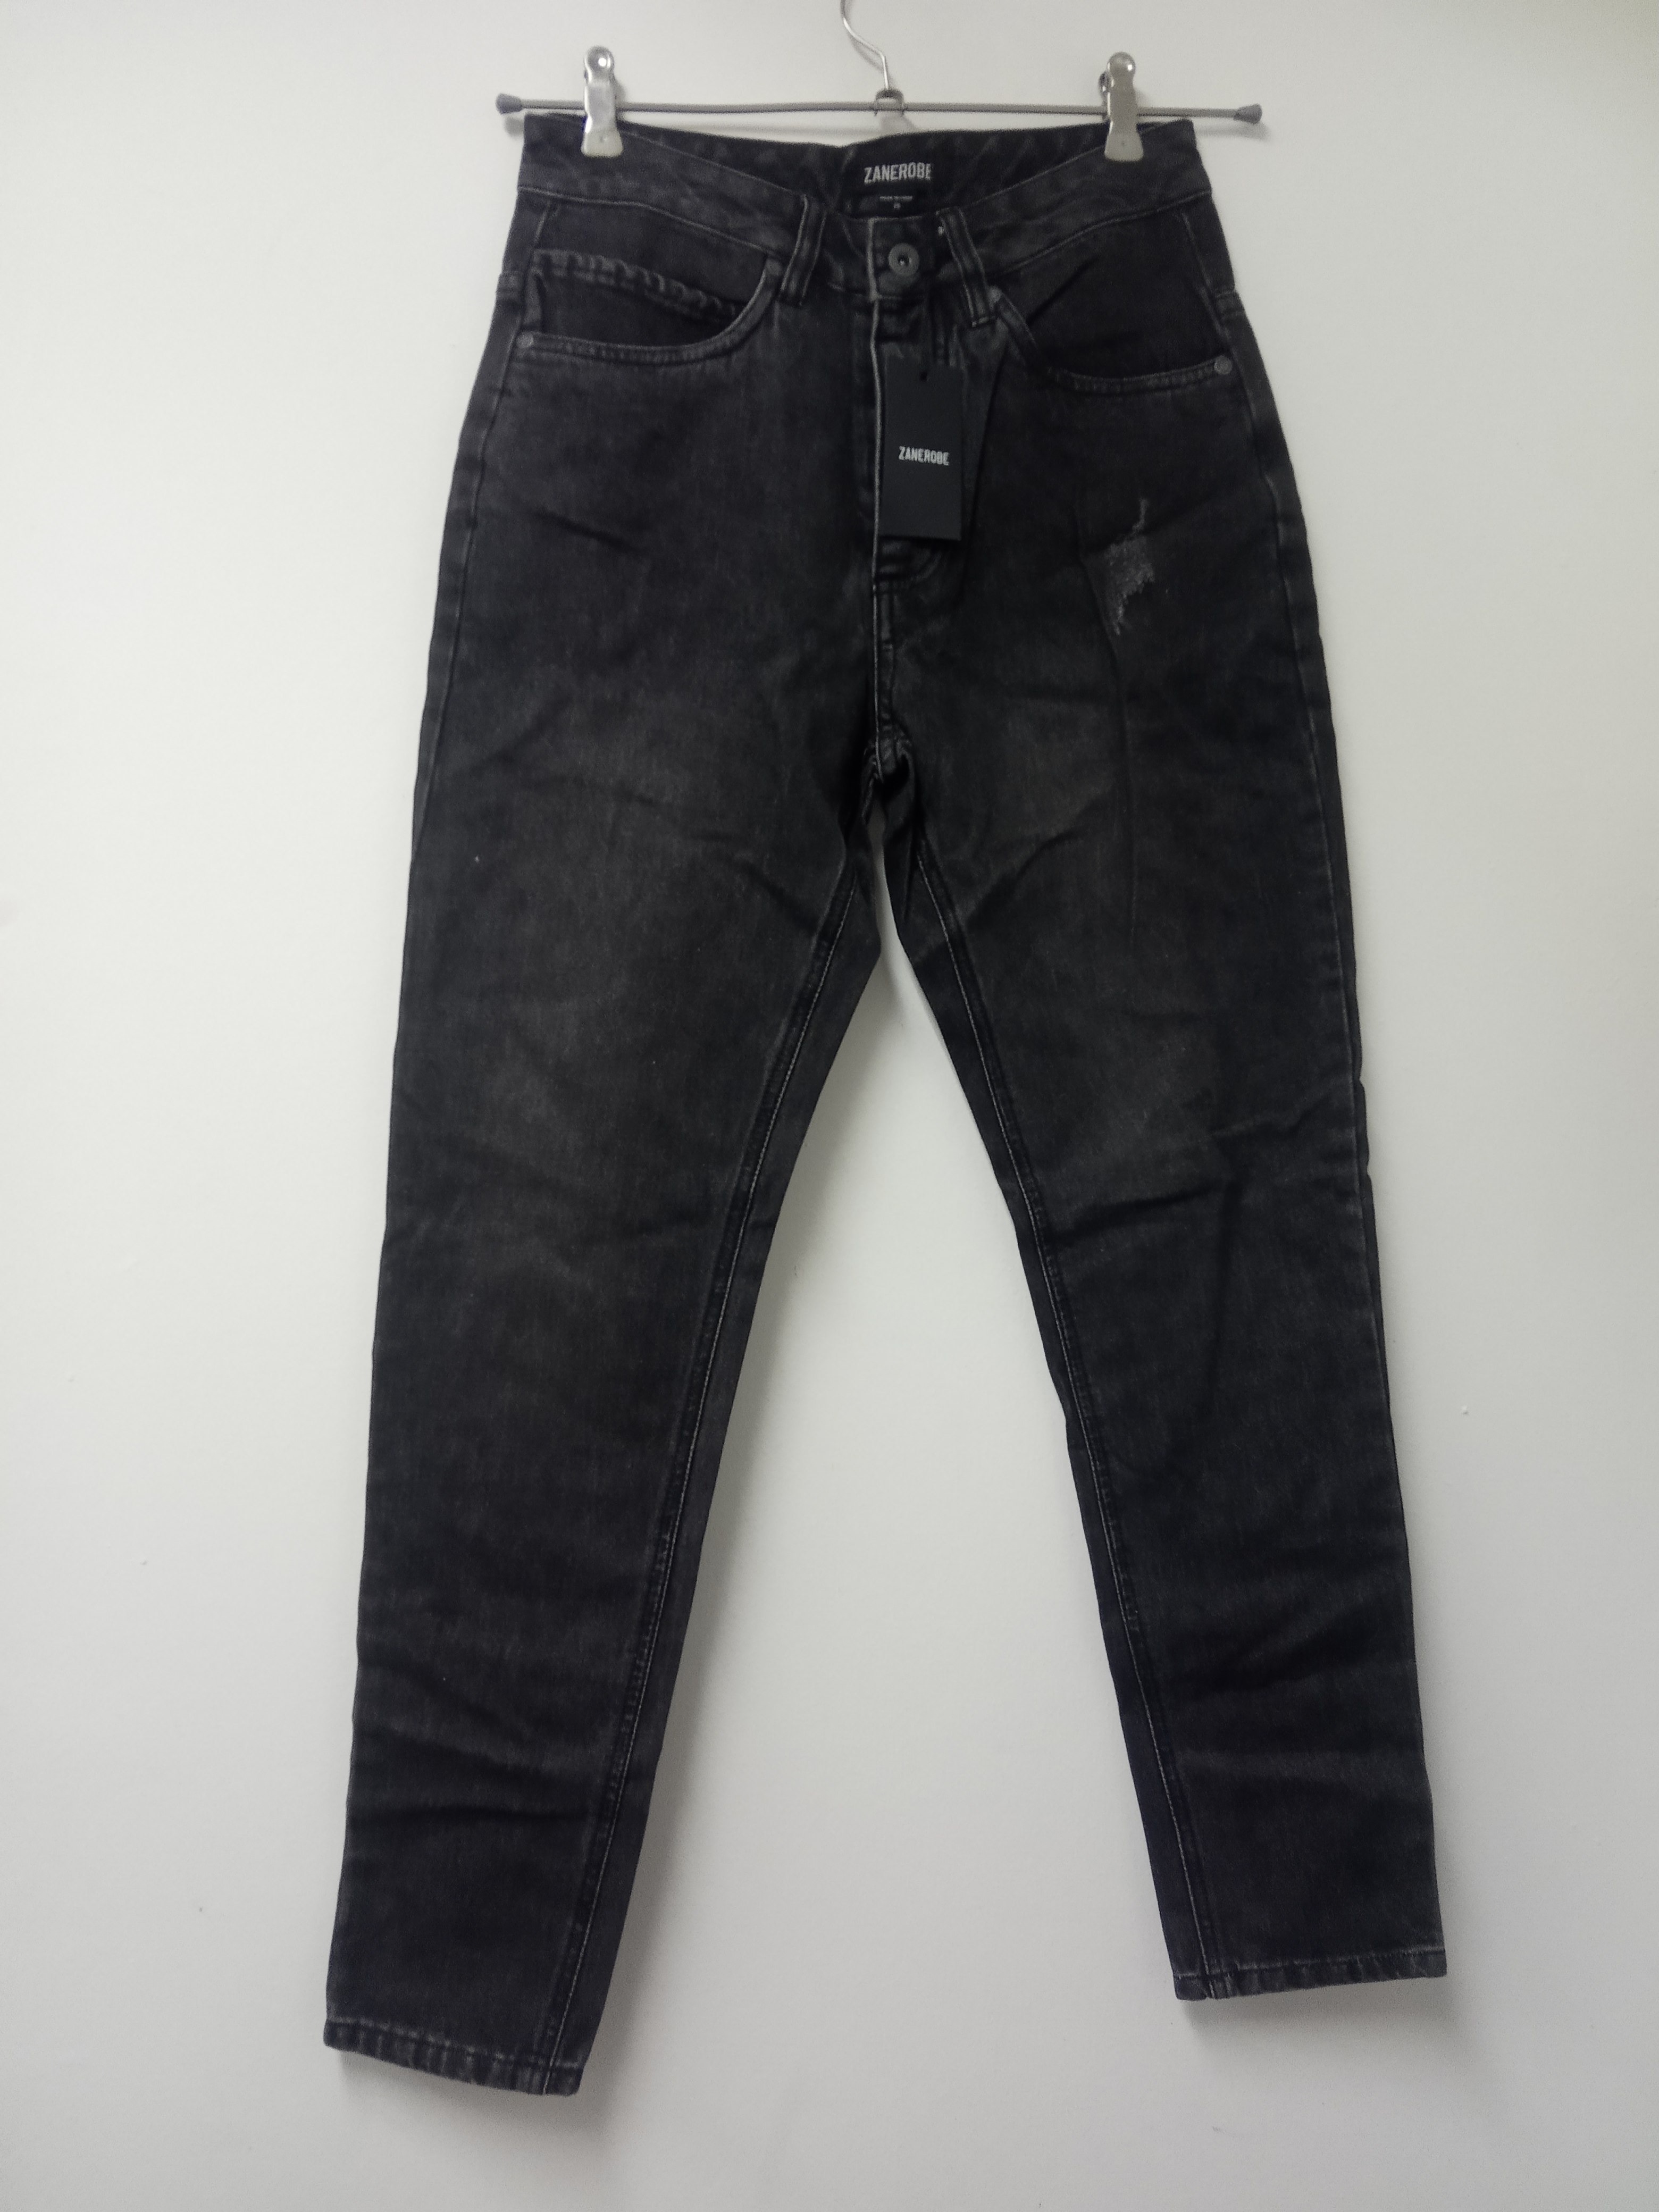 תמונה 2 ,ג'ינס zanrobe מידה 29 למכירה בתל אביב  ביגוד ואביזרים  ג'ינסים ומכנסיים